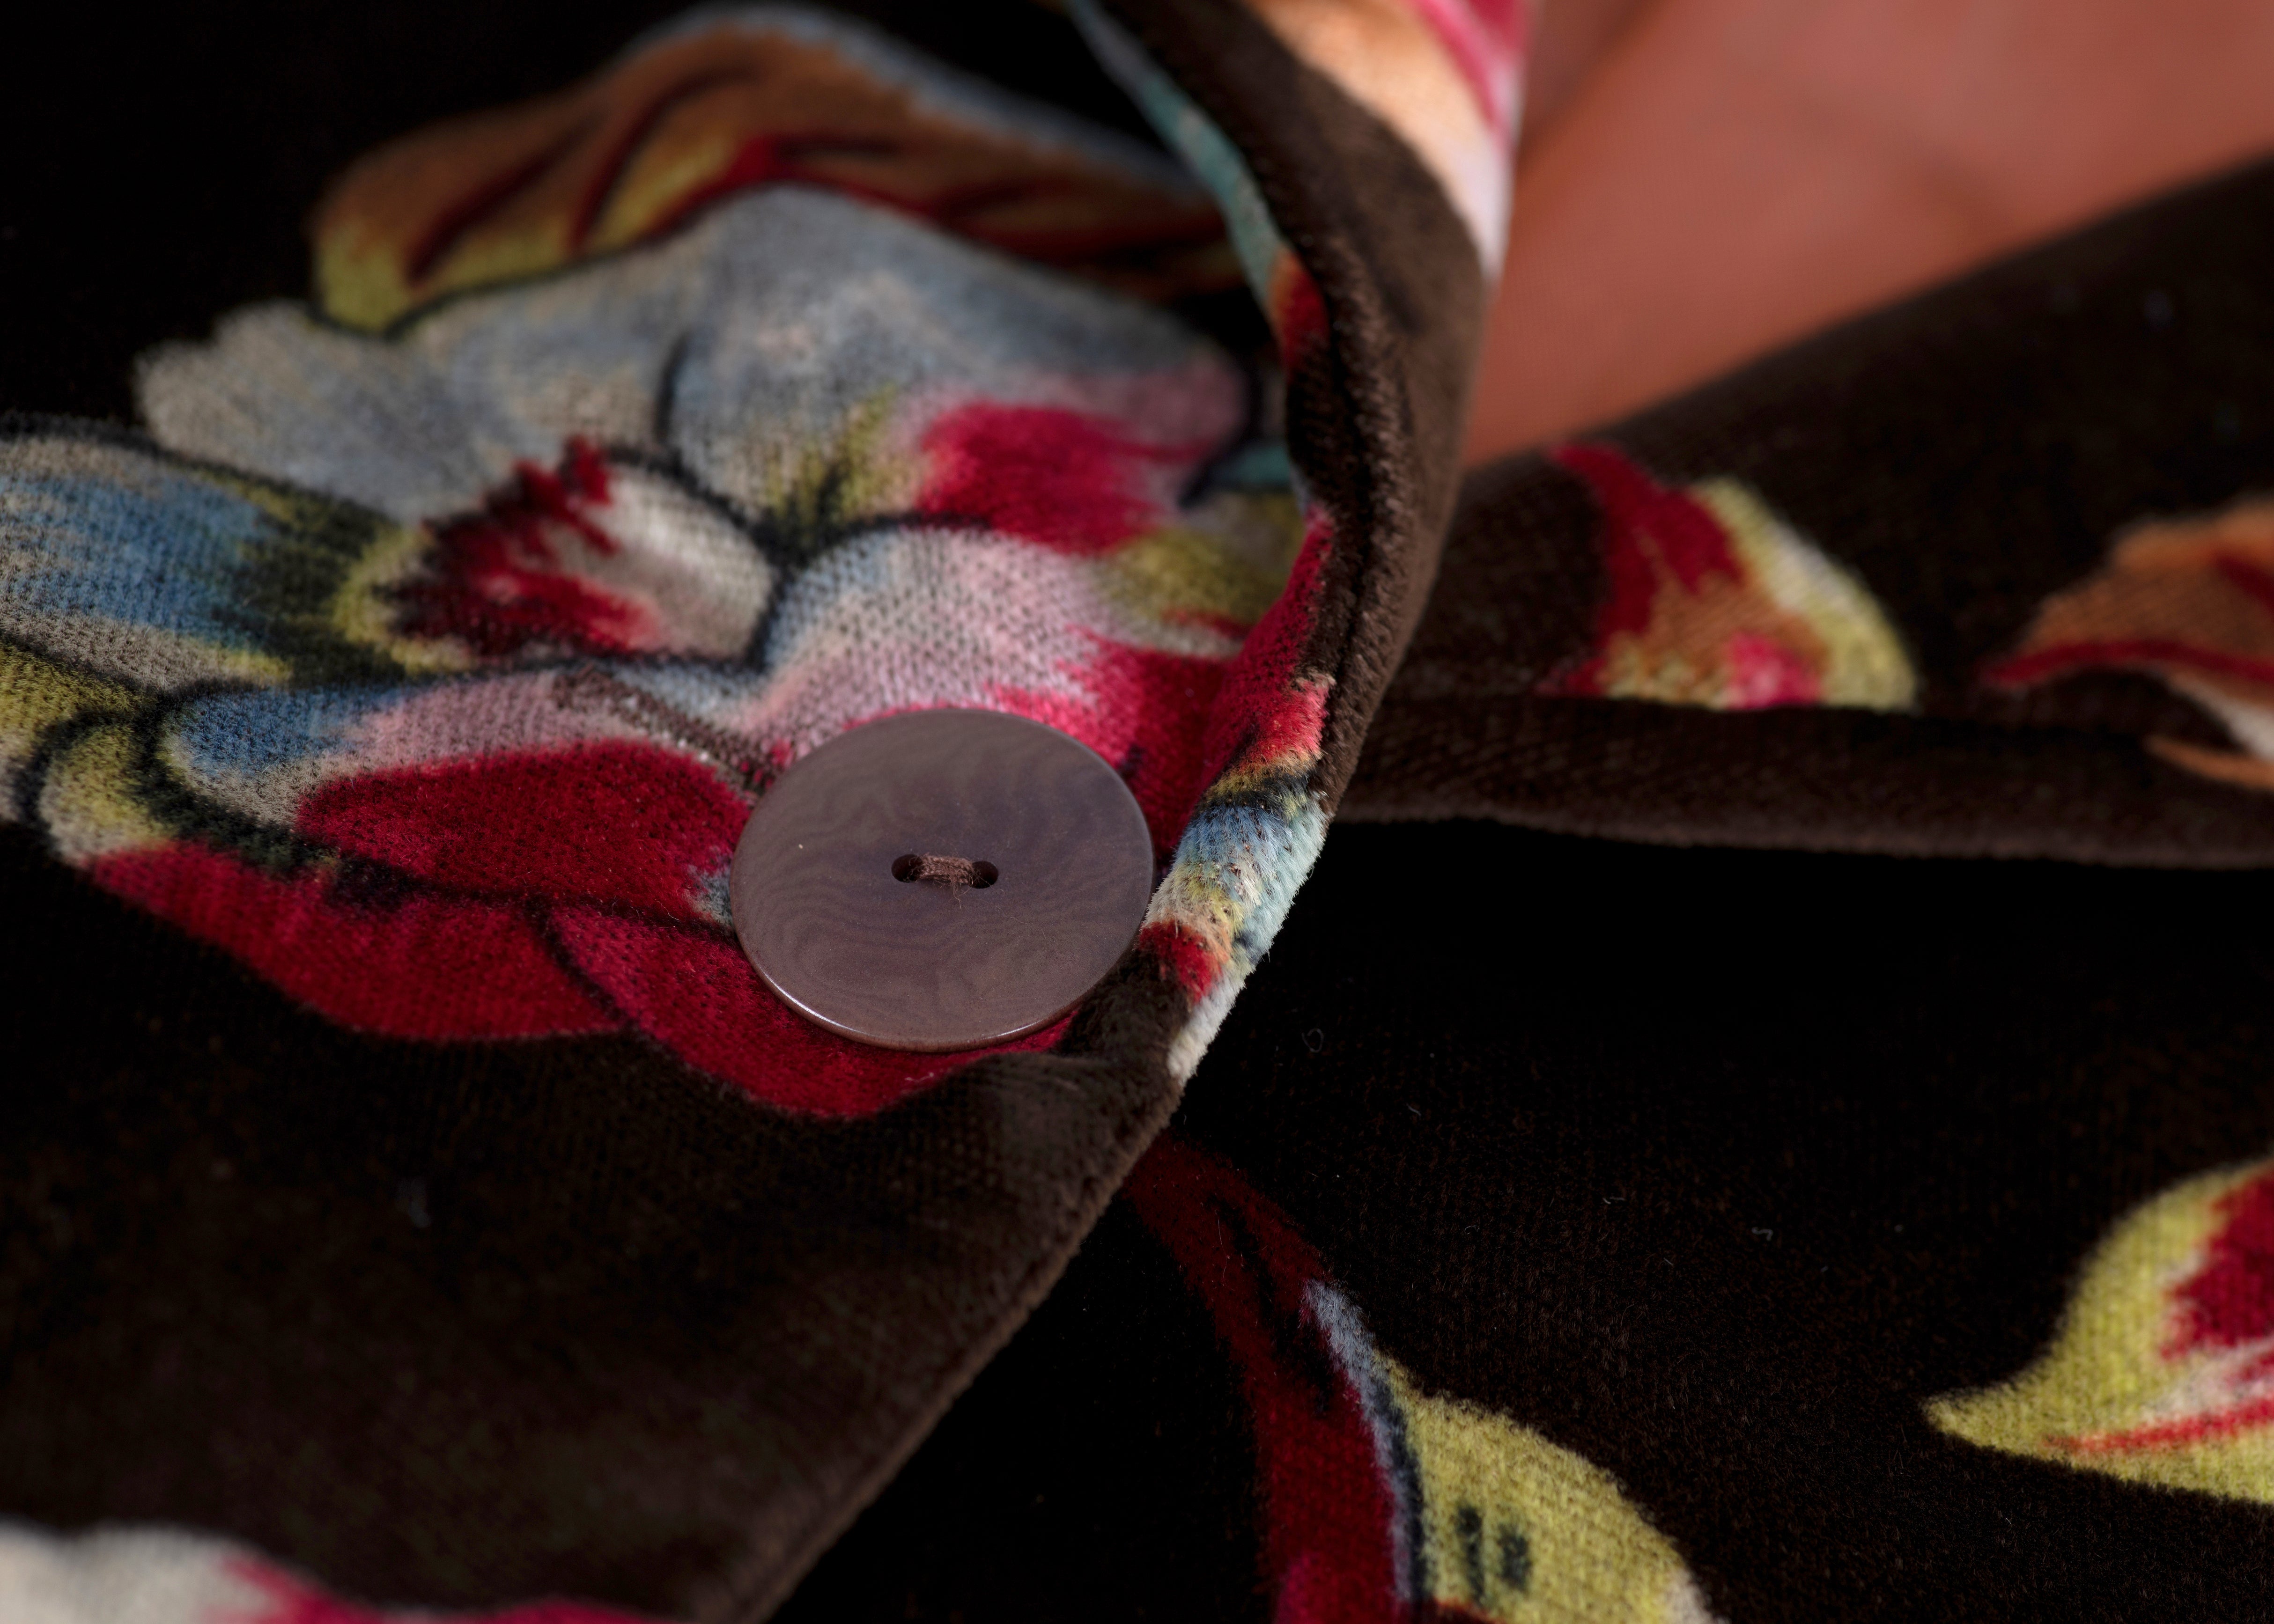 Kenzo Paris Vintage Velvet Floral Jacket, Women's S